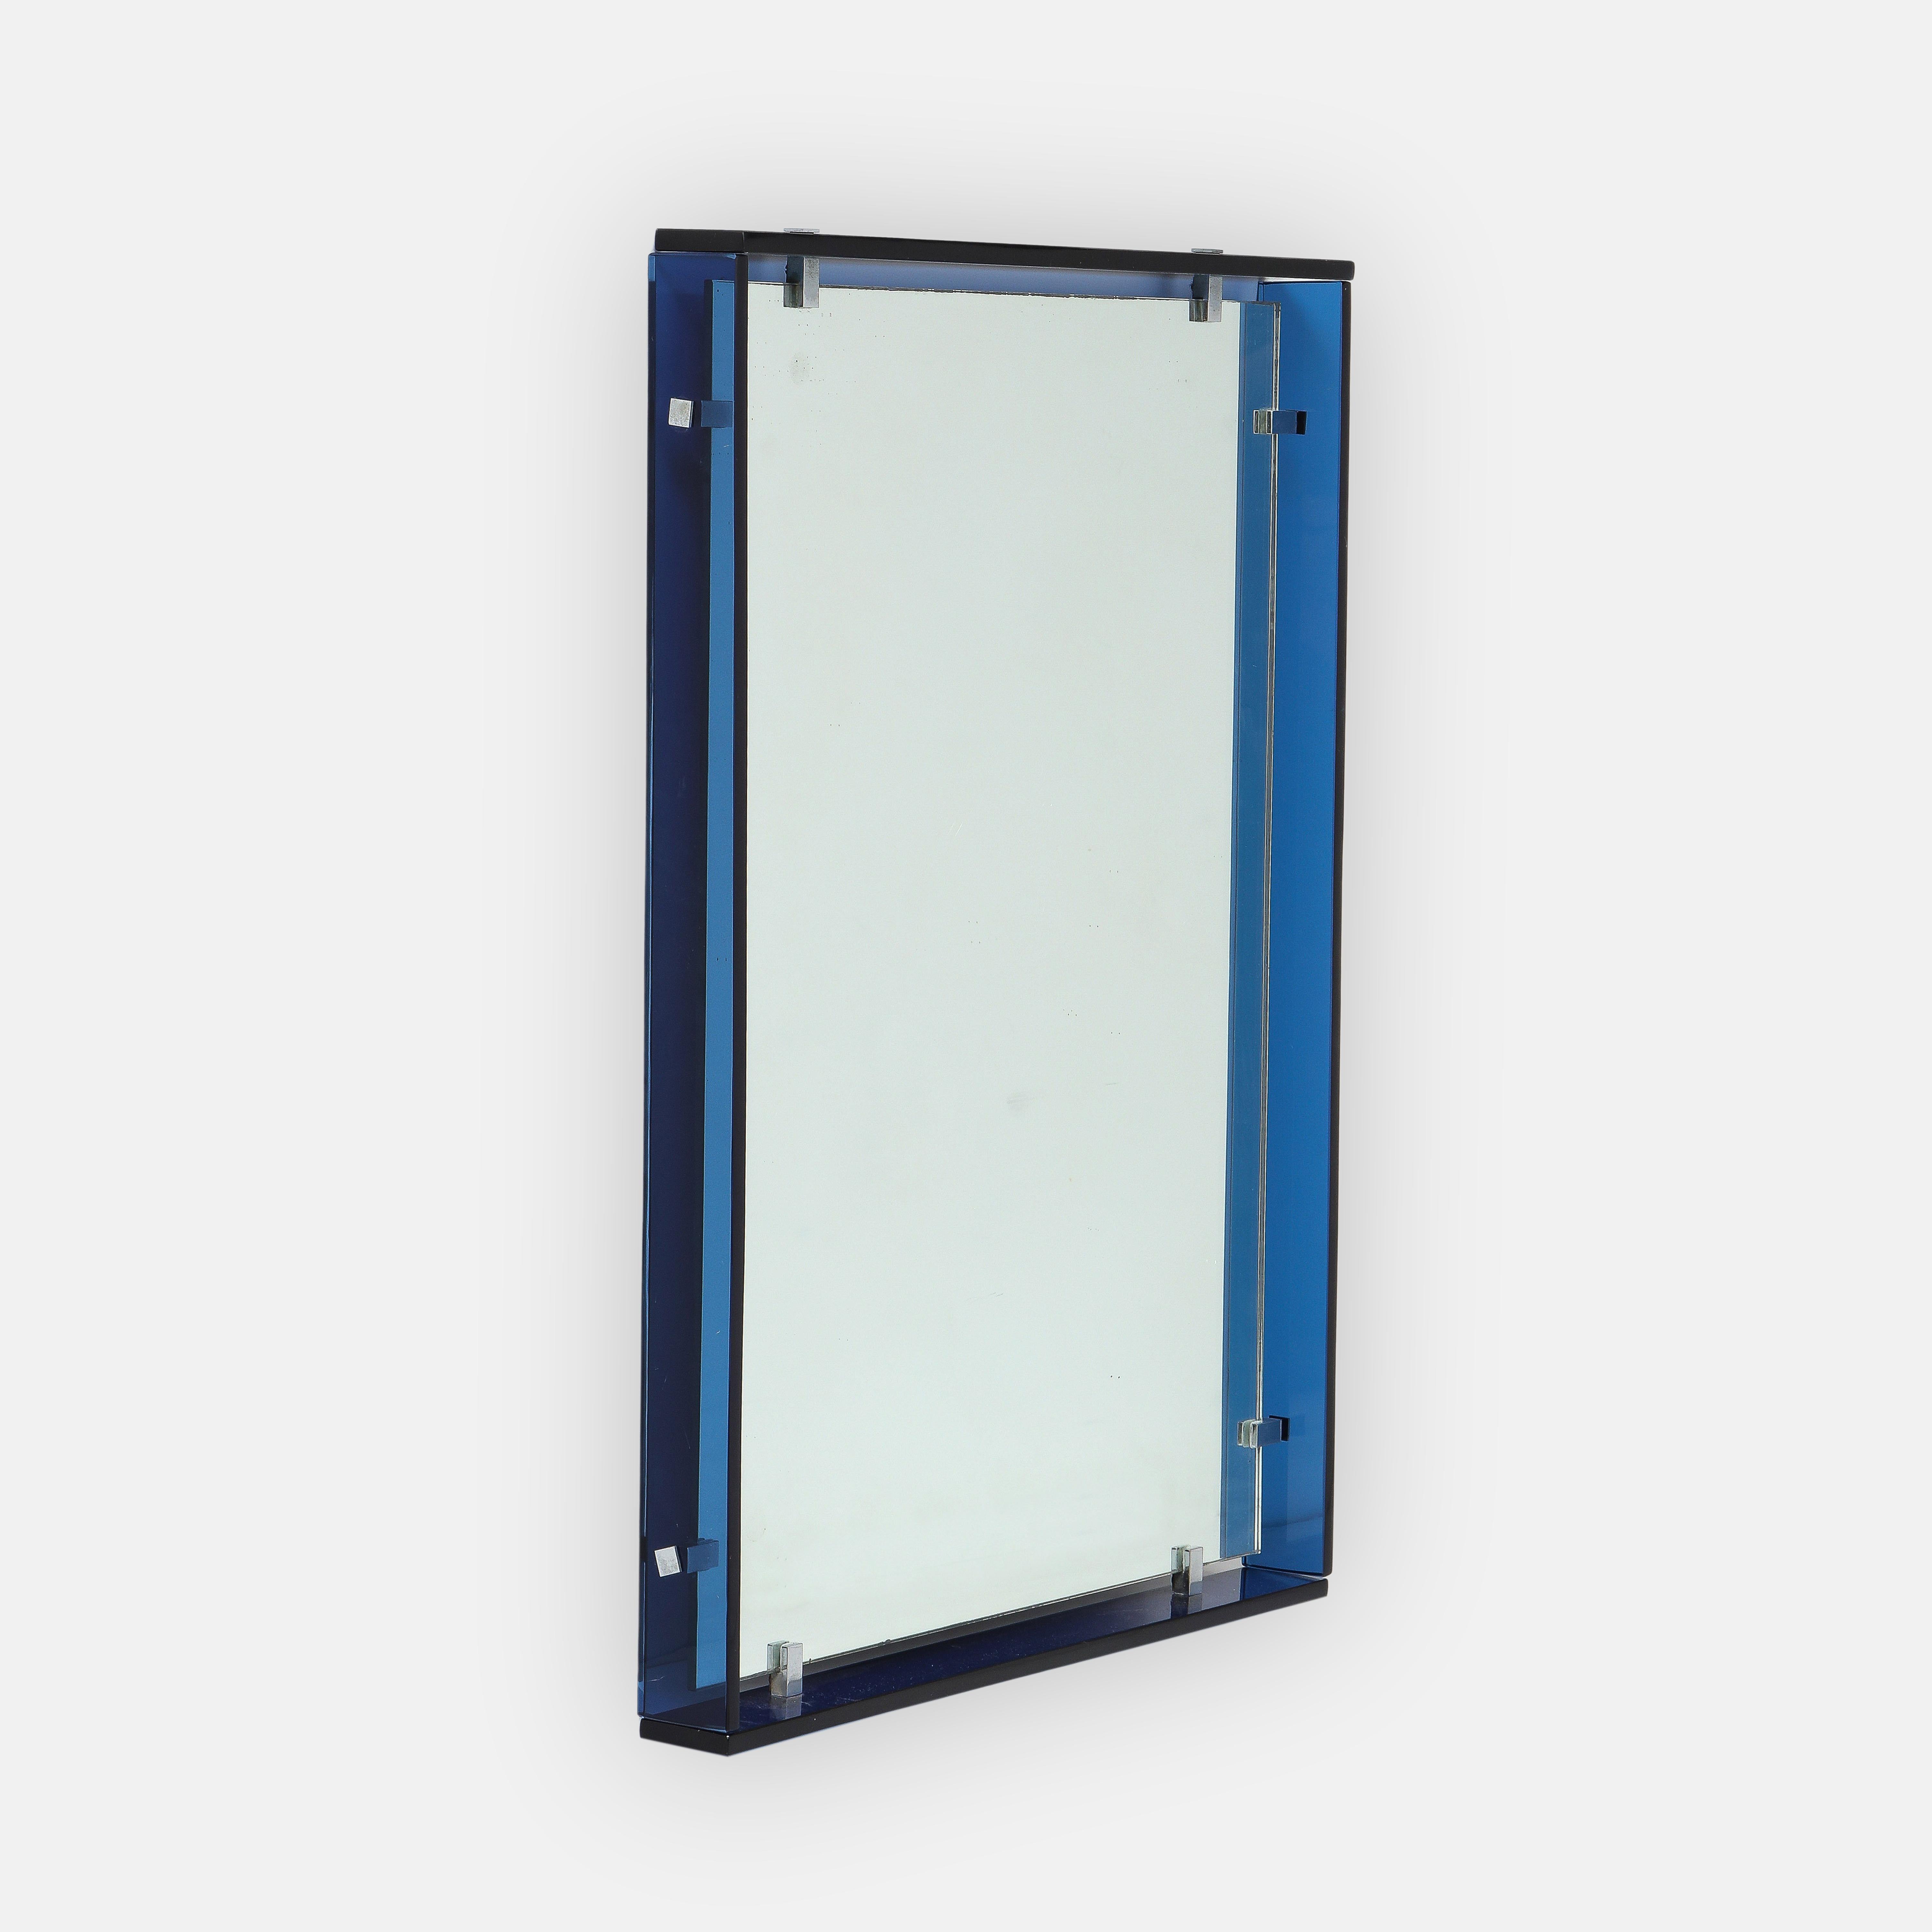 Miroir rectangulaire moderniste Max Ingrand pour Fontana Arte modèle 2014 composé d'épaisses bandes de verre de cristal de couleur bleu cobalt entourant le verre miroir d'origine avec supports à clip en laiton nickelé, Italie, années 1960. Ce design